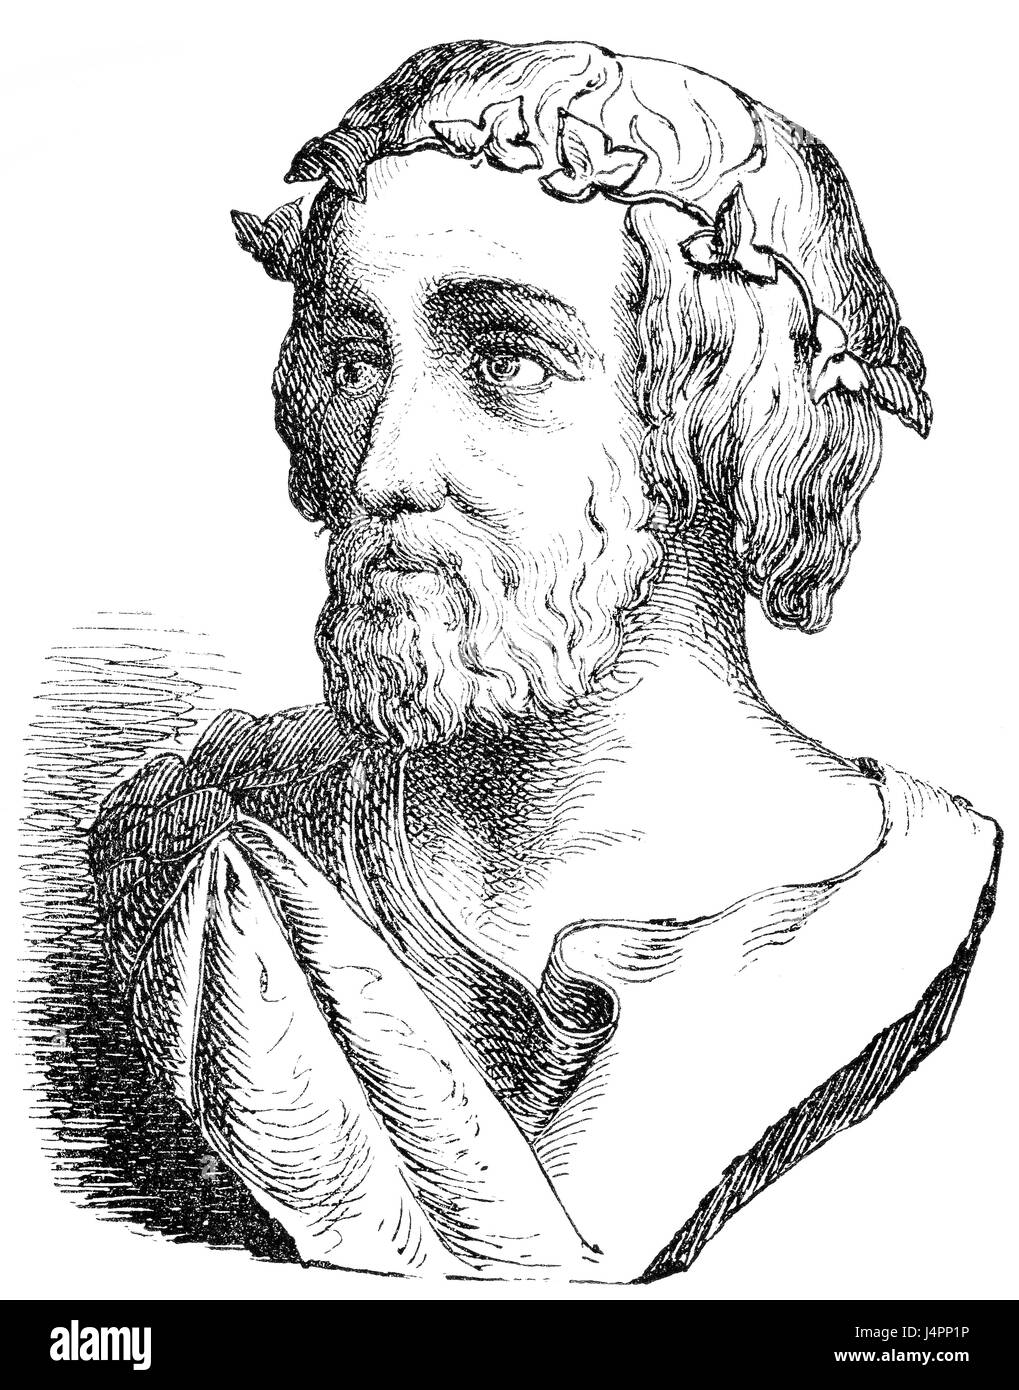 Hésiode, un poète grec, la Grèce antique Banque D'Images